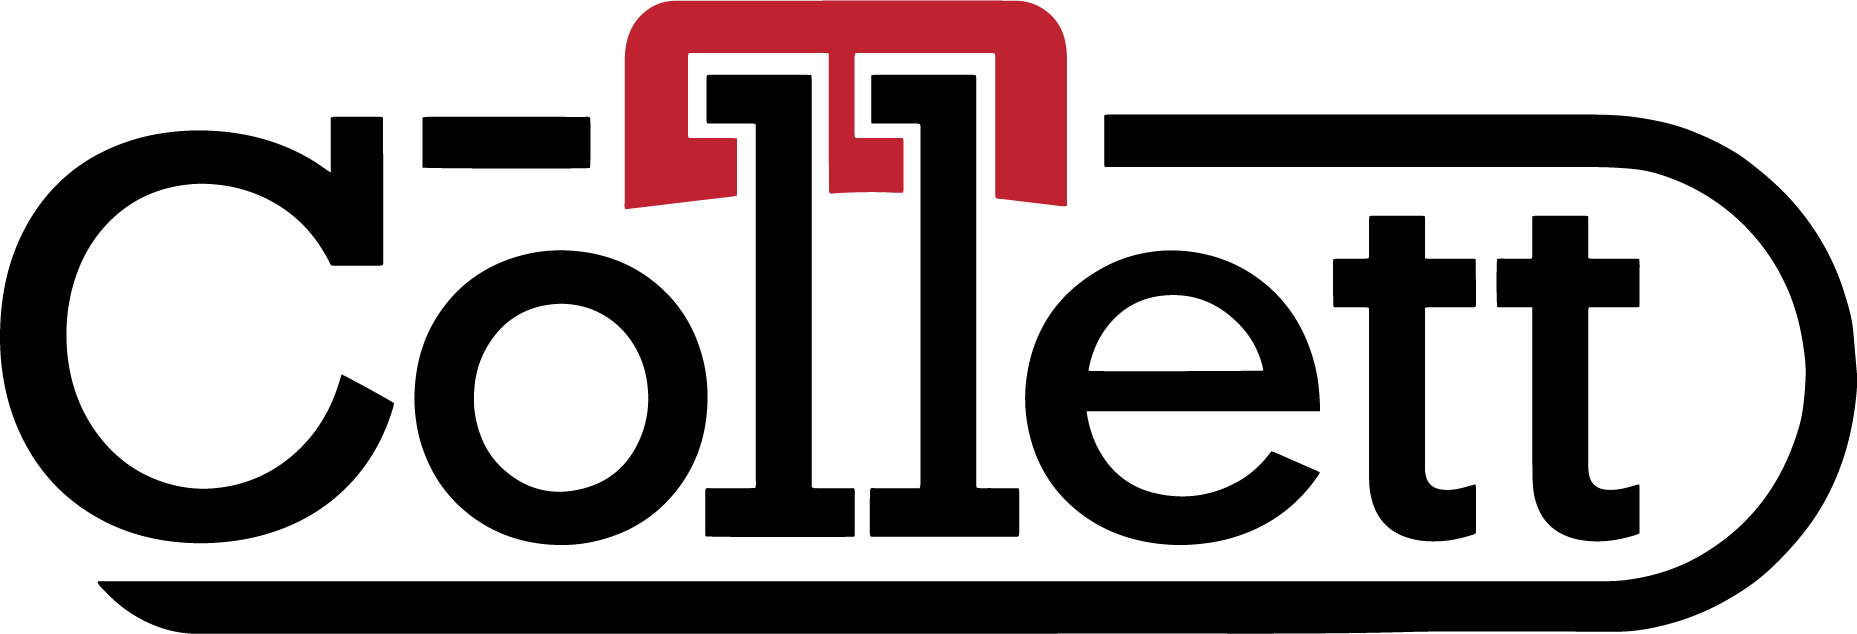 Collett logo